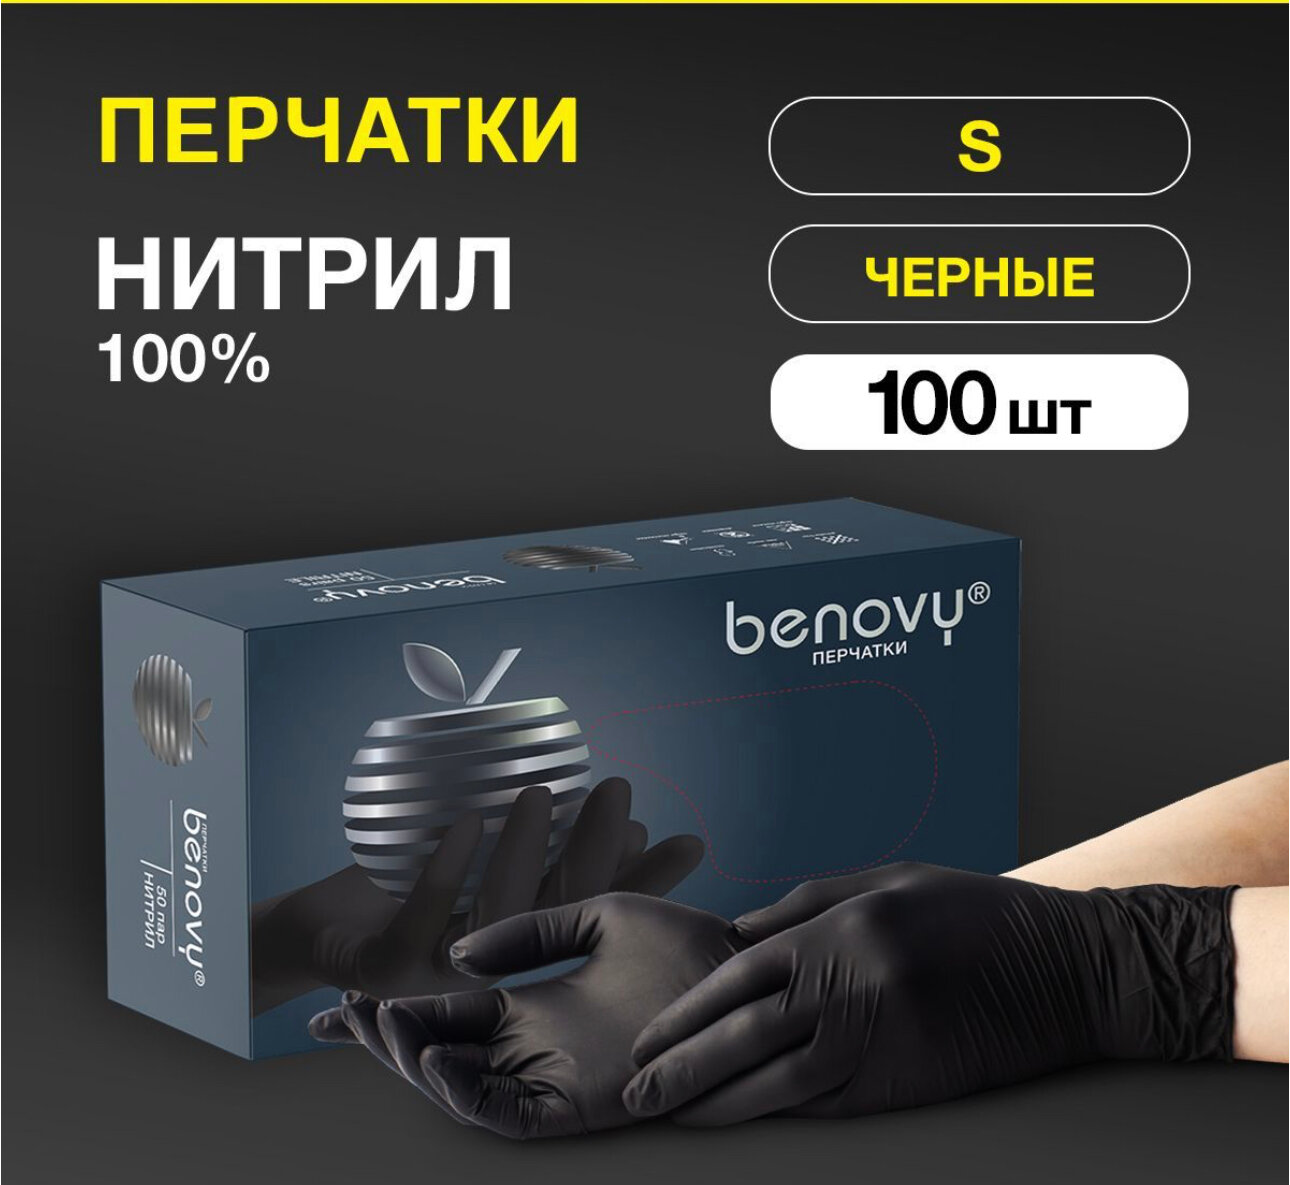 Перчатки смотровые Benovy Nitrile Multicolor текстурированные на пальцах, 200шт (100 пар), размер: S, цвет: черный, 2 уп. по 50 пар